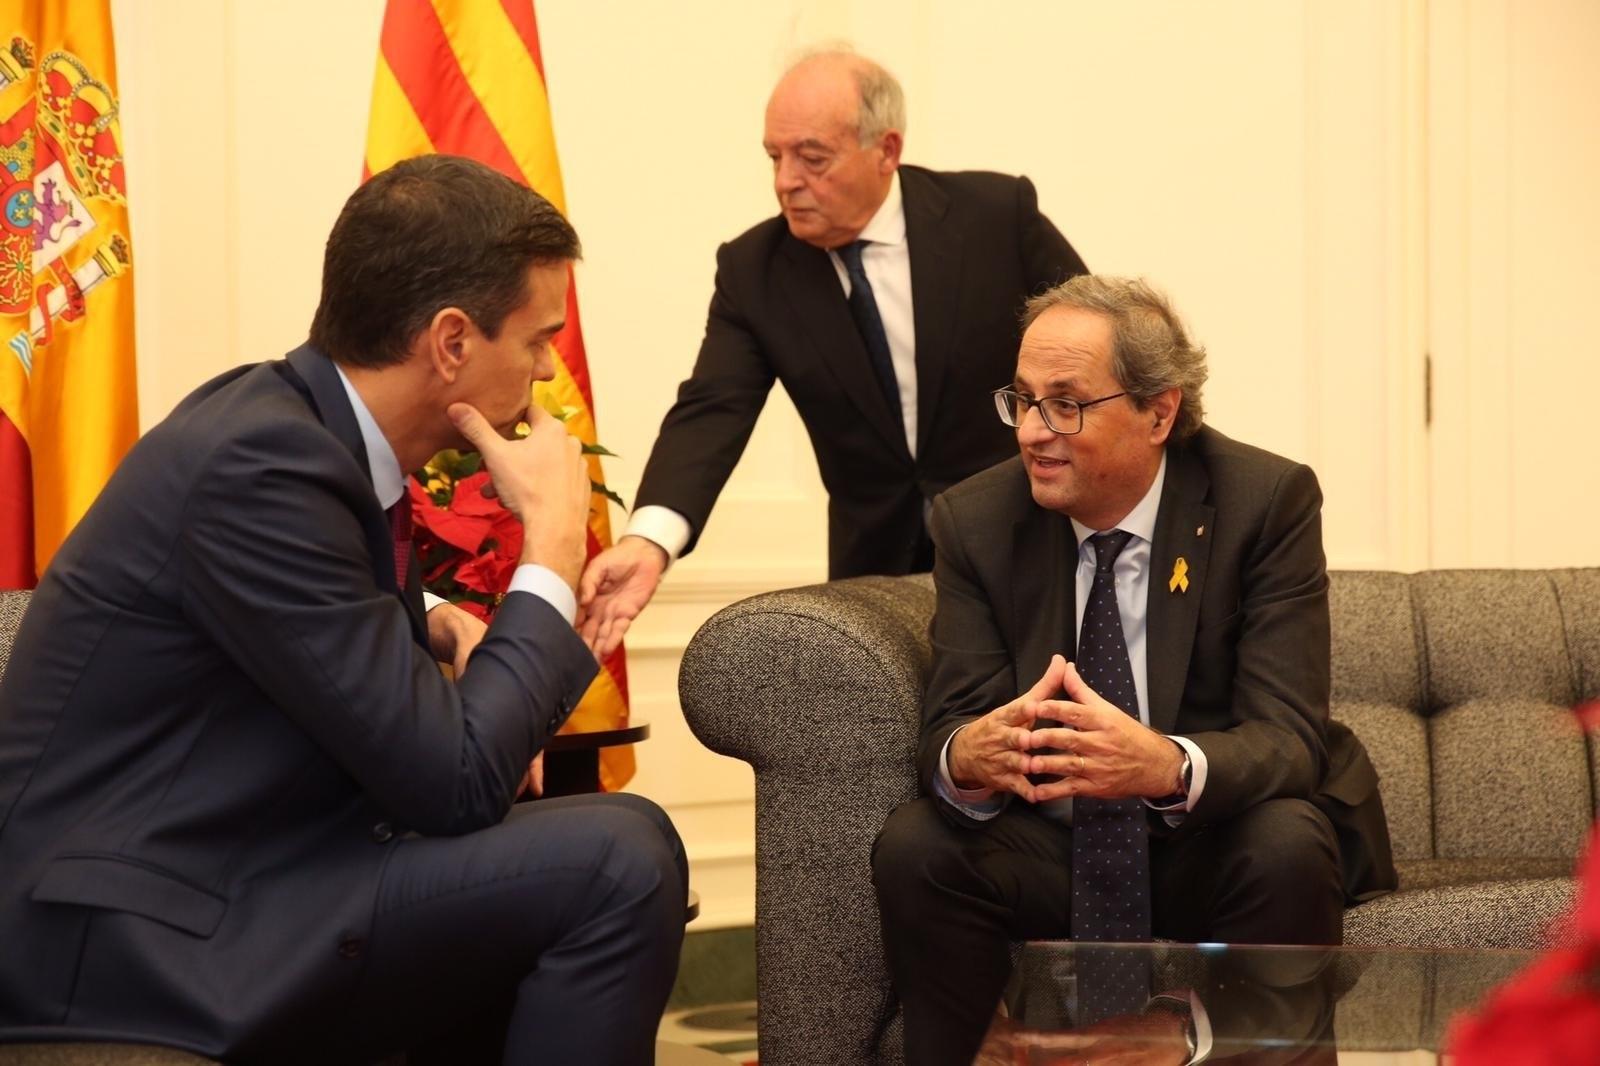 La Generalitat coloca dos plantas amarillas en la foto oficial y Moncloa contrarresta con una roja delante